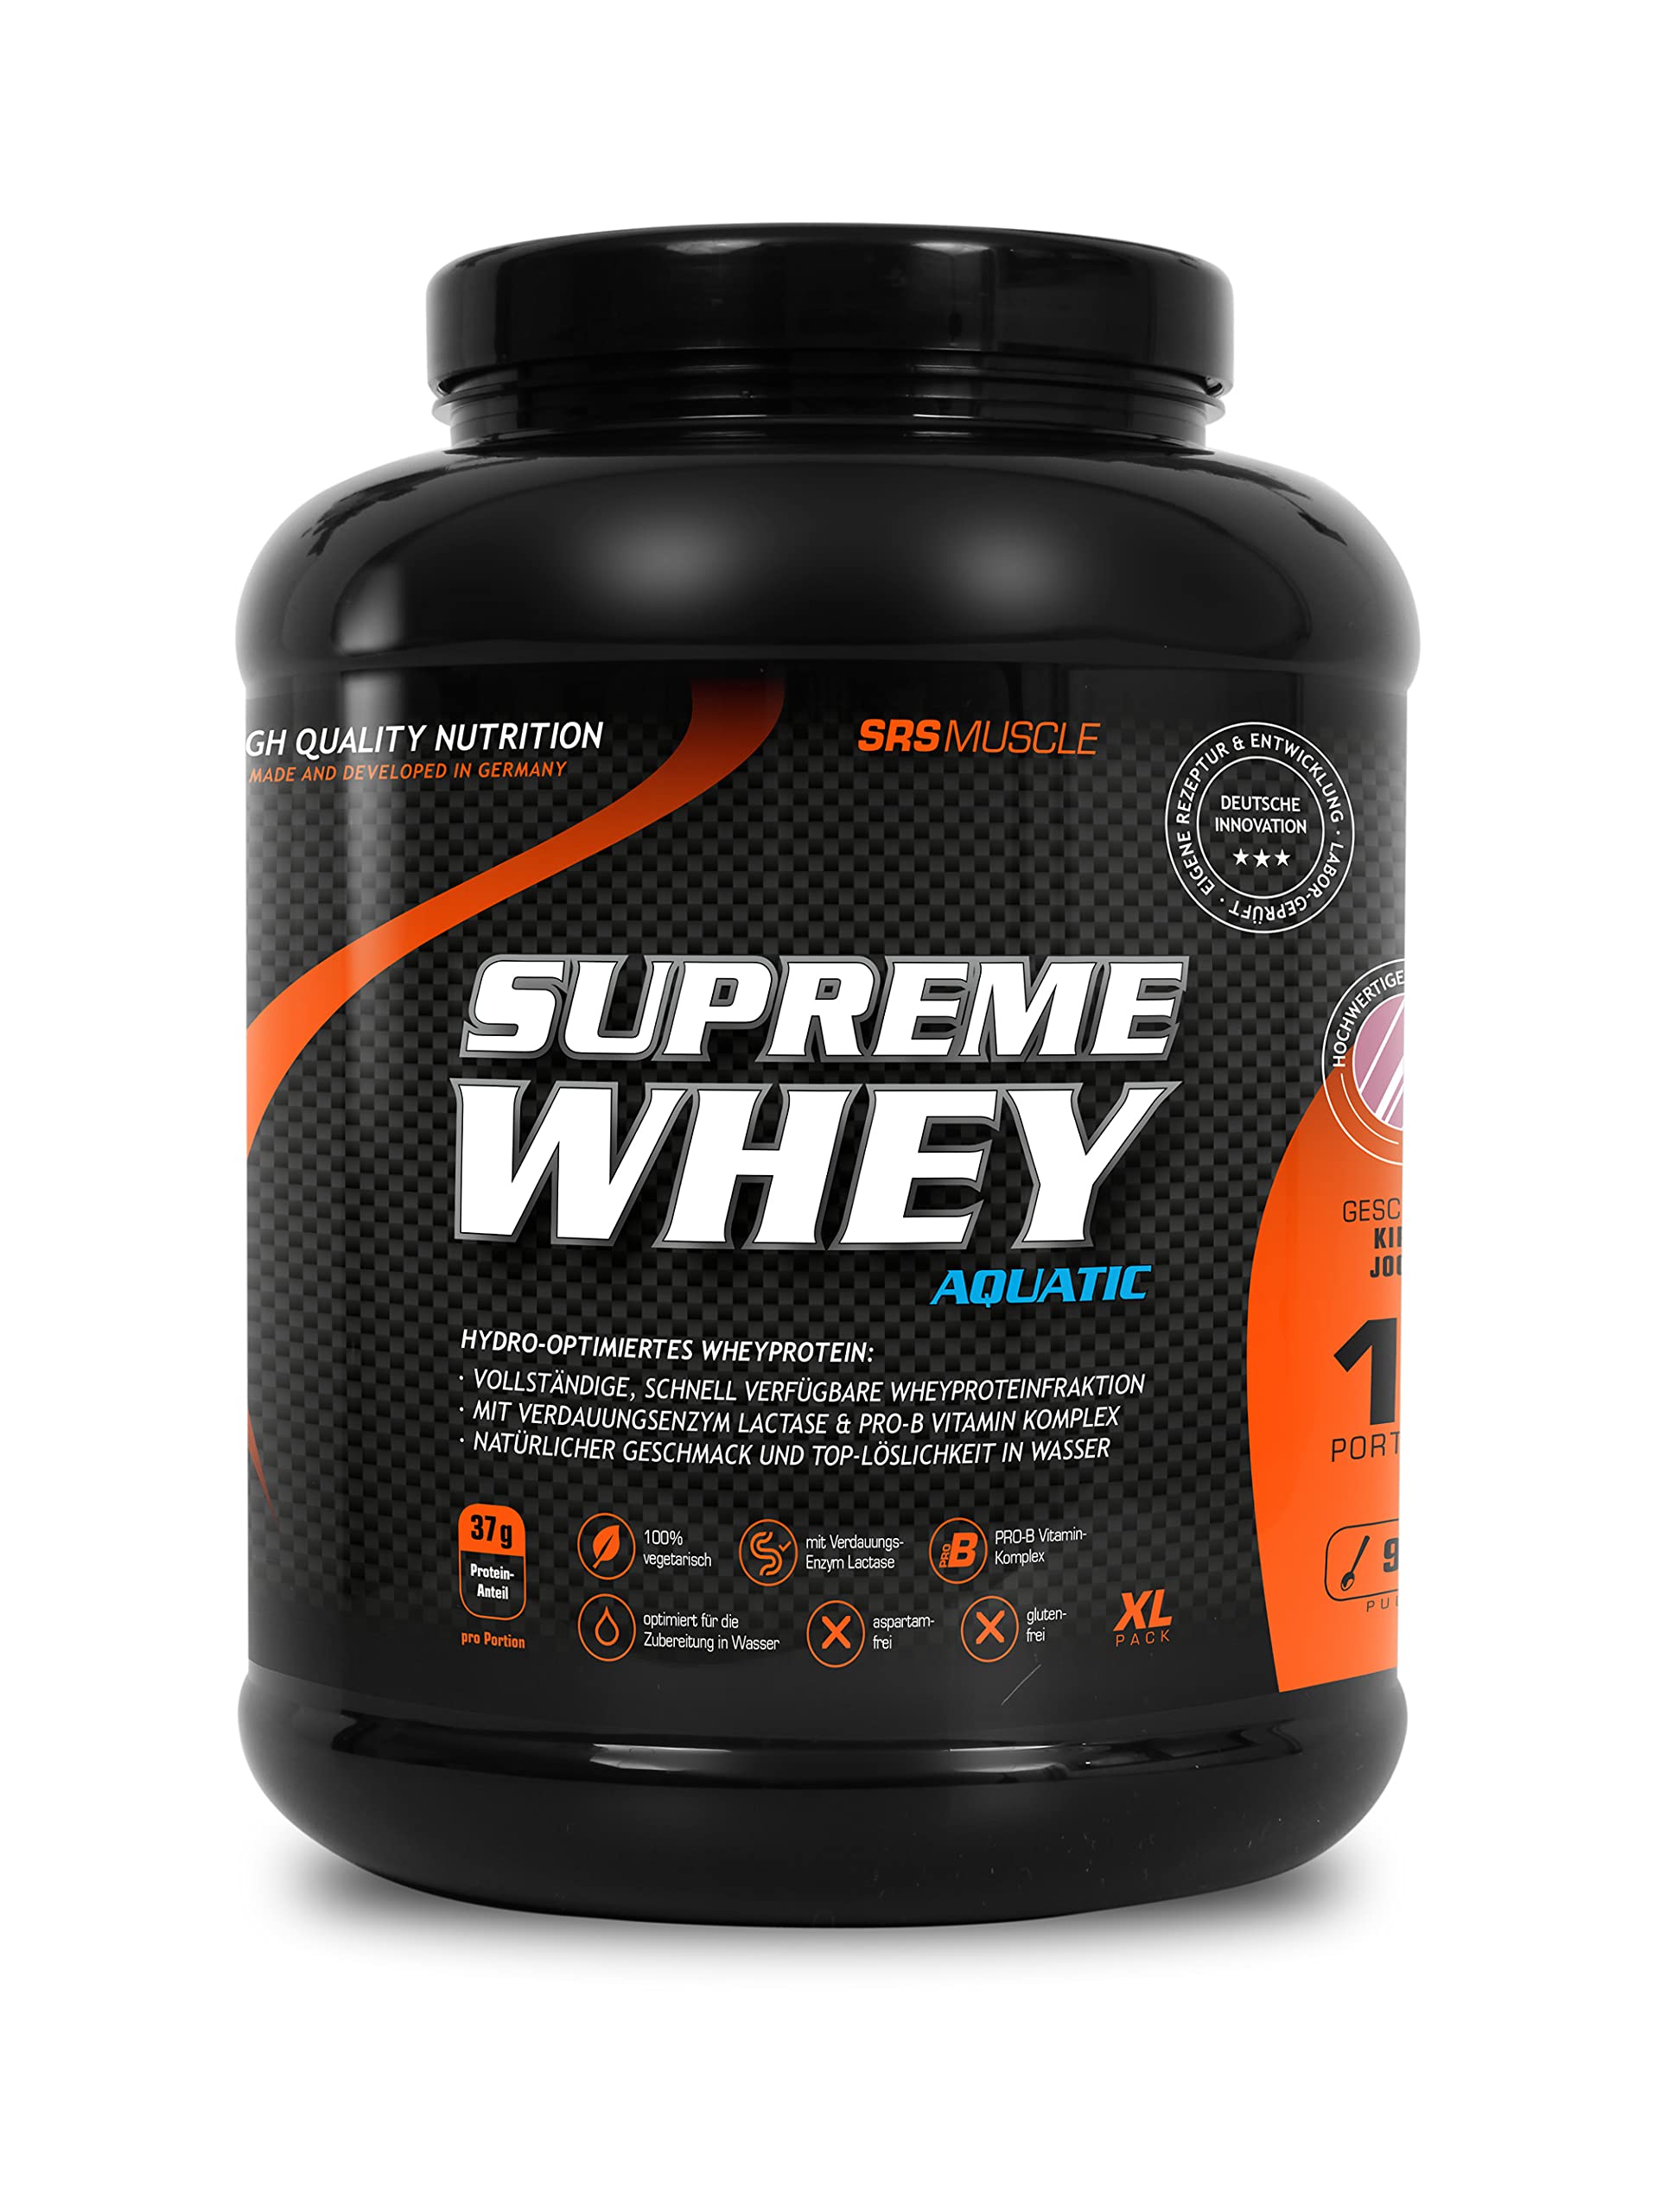 SRS Muscle - Supreme Whey XL, 900 g, Vanille | Hydro-optimized Whey Protein | mit Enzym Laktase und Pro-B Vitaminen | aspartamfrei | deutsche Premiumqualität